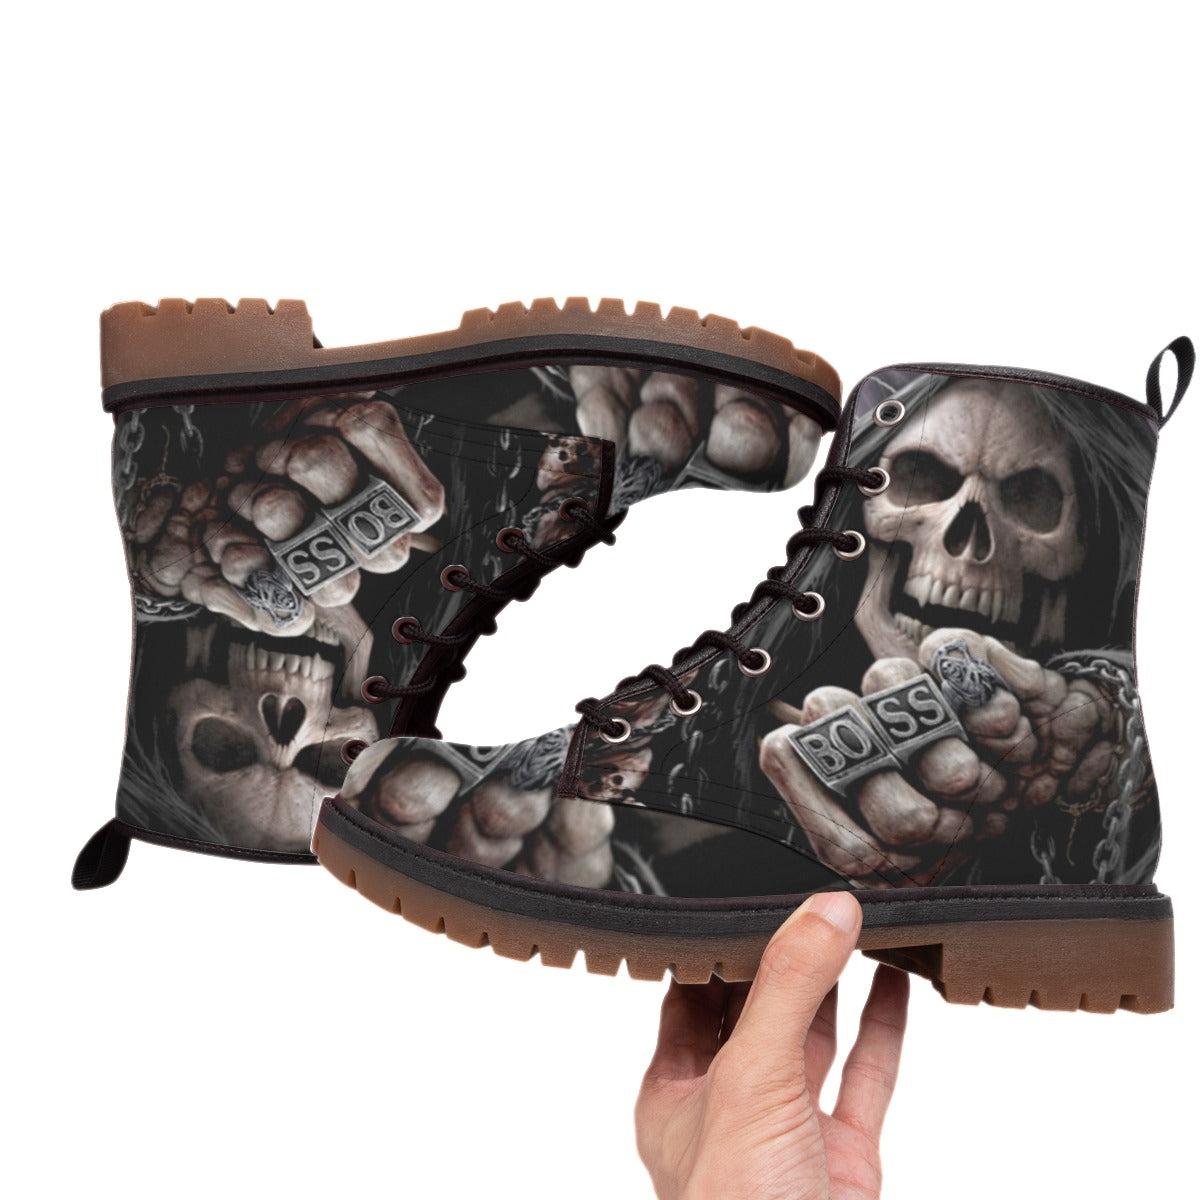 BOSS grim reaper skull men's women's Boots, Gothic skeleton boots shoes for men women